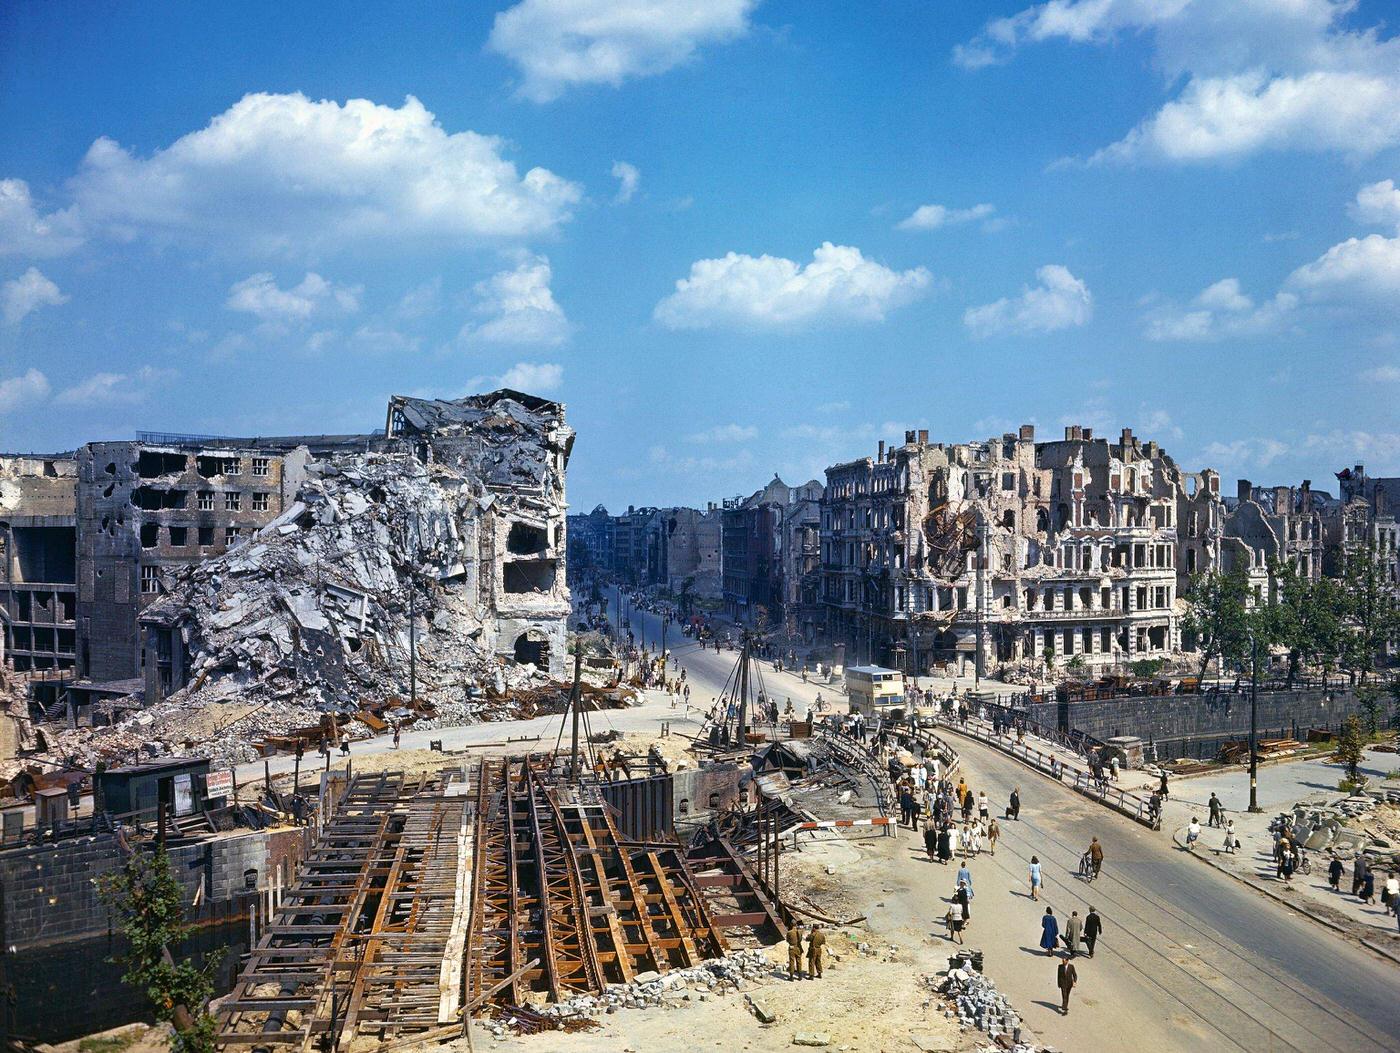 Ruined buildings in Berlin, Germany, 1945.